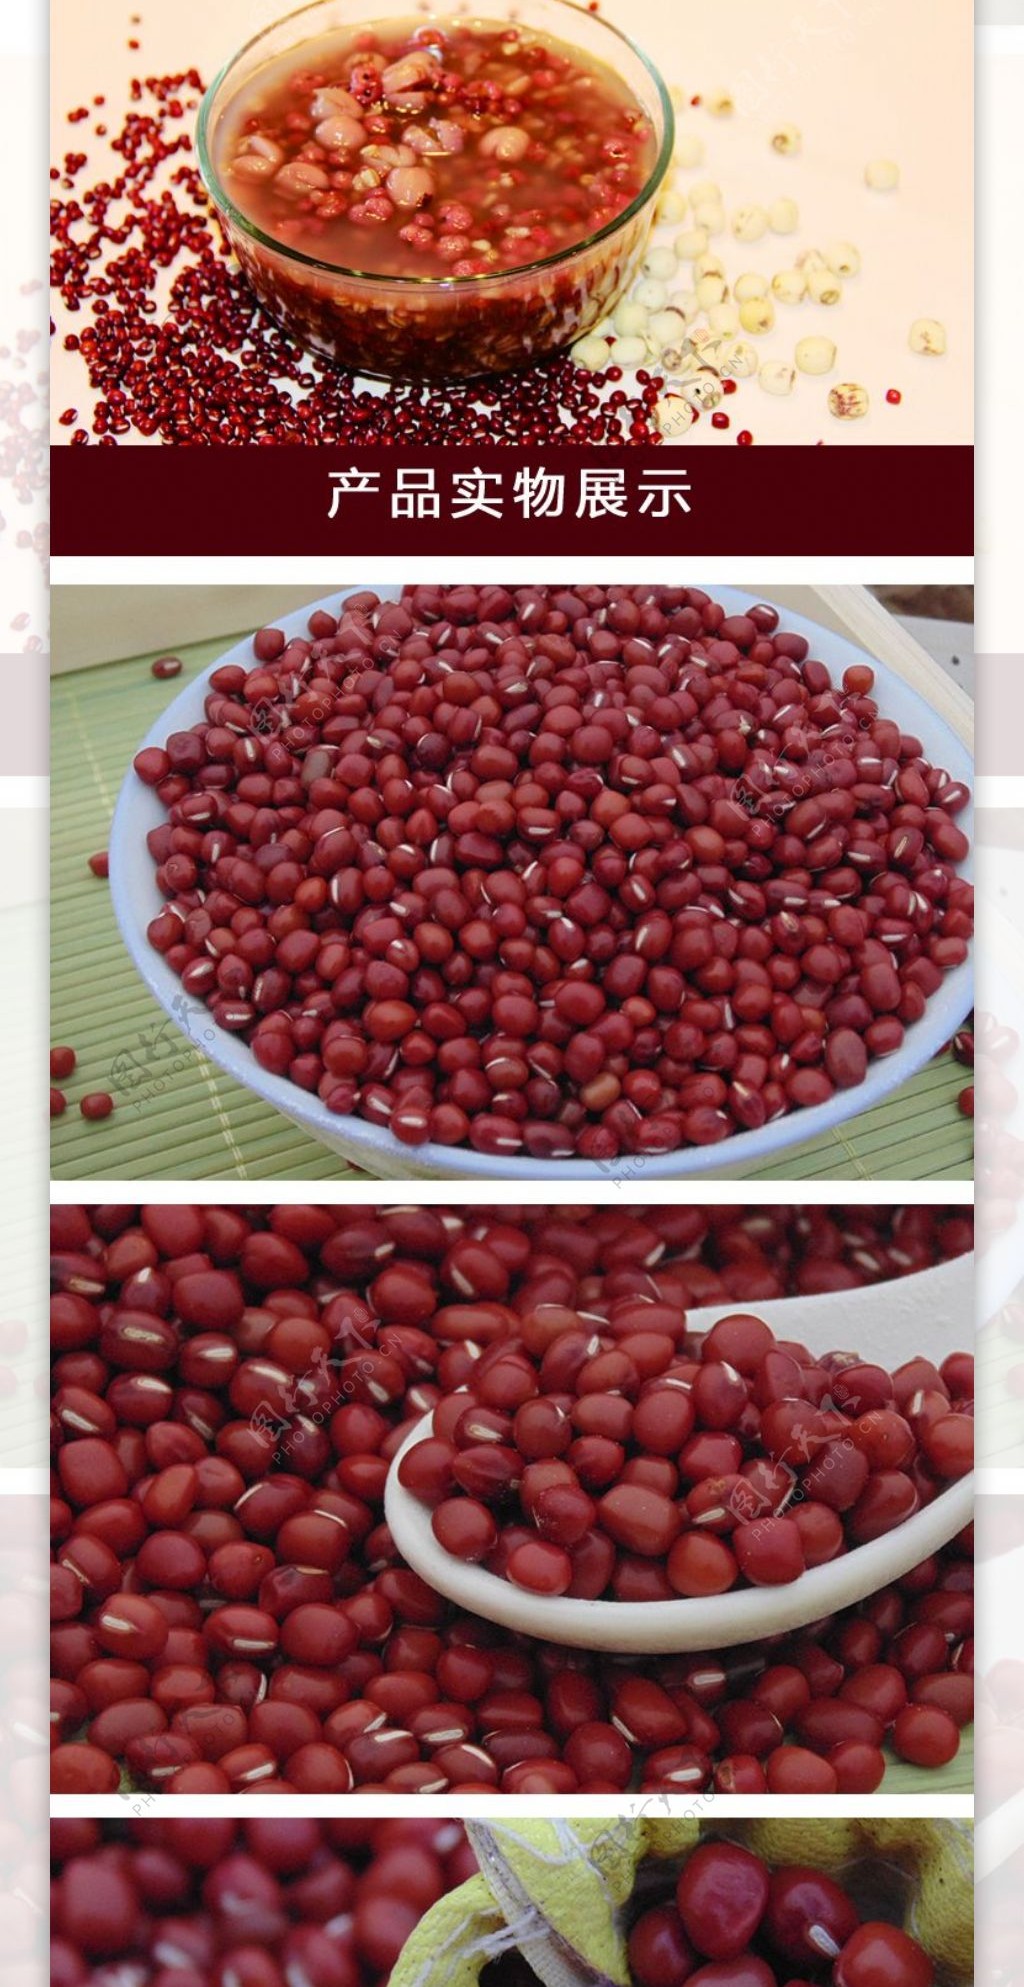 乡村红豆淘宝详情页面设计真实红豆图片